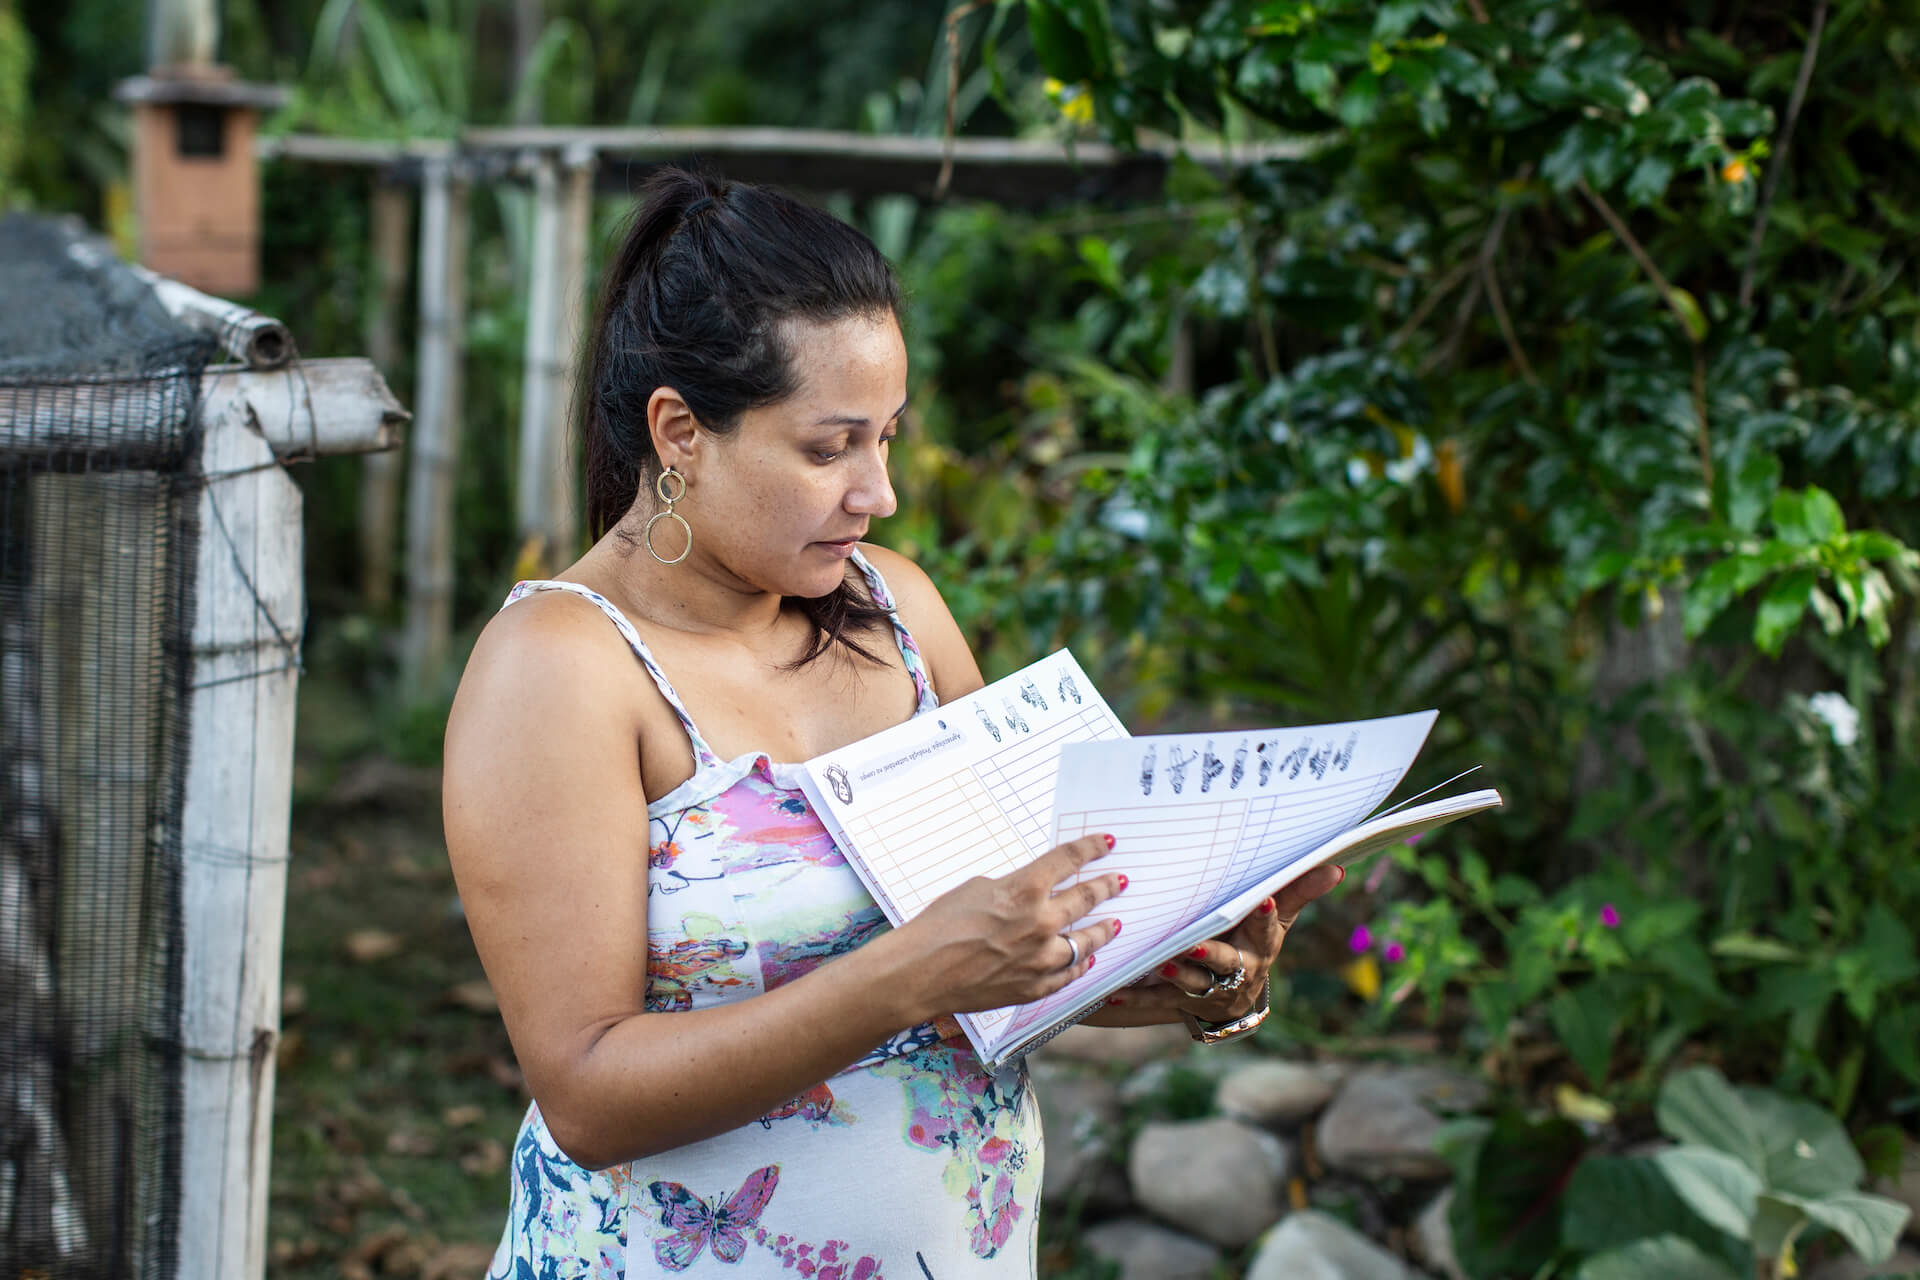 Janette Dantas, 33 ans, enceinte de sept mois sur la photo, est l'une des nombreuses agricultrices brésiliennes qui mènent une révolution tranquille en coupant leurs propres cultures.